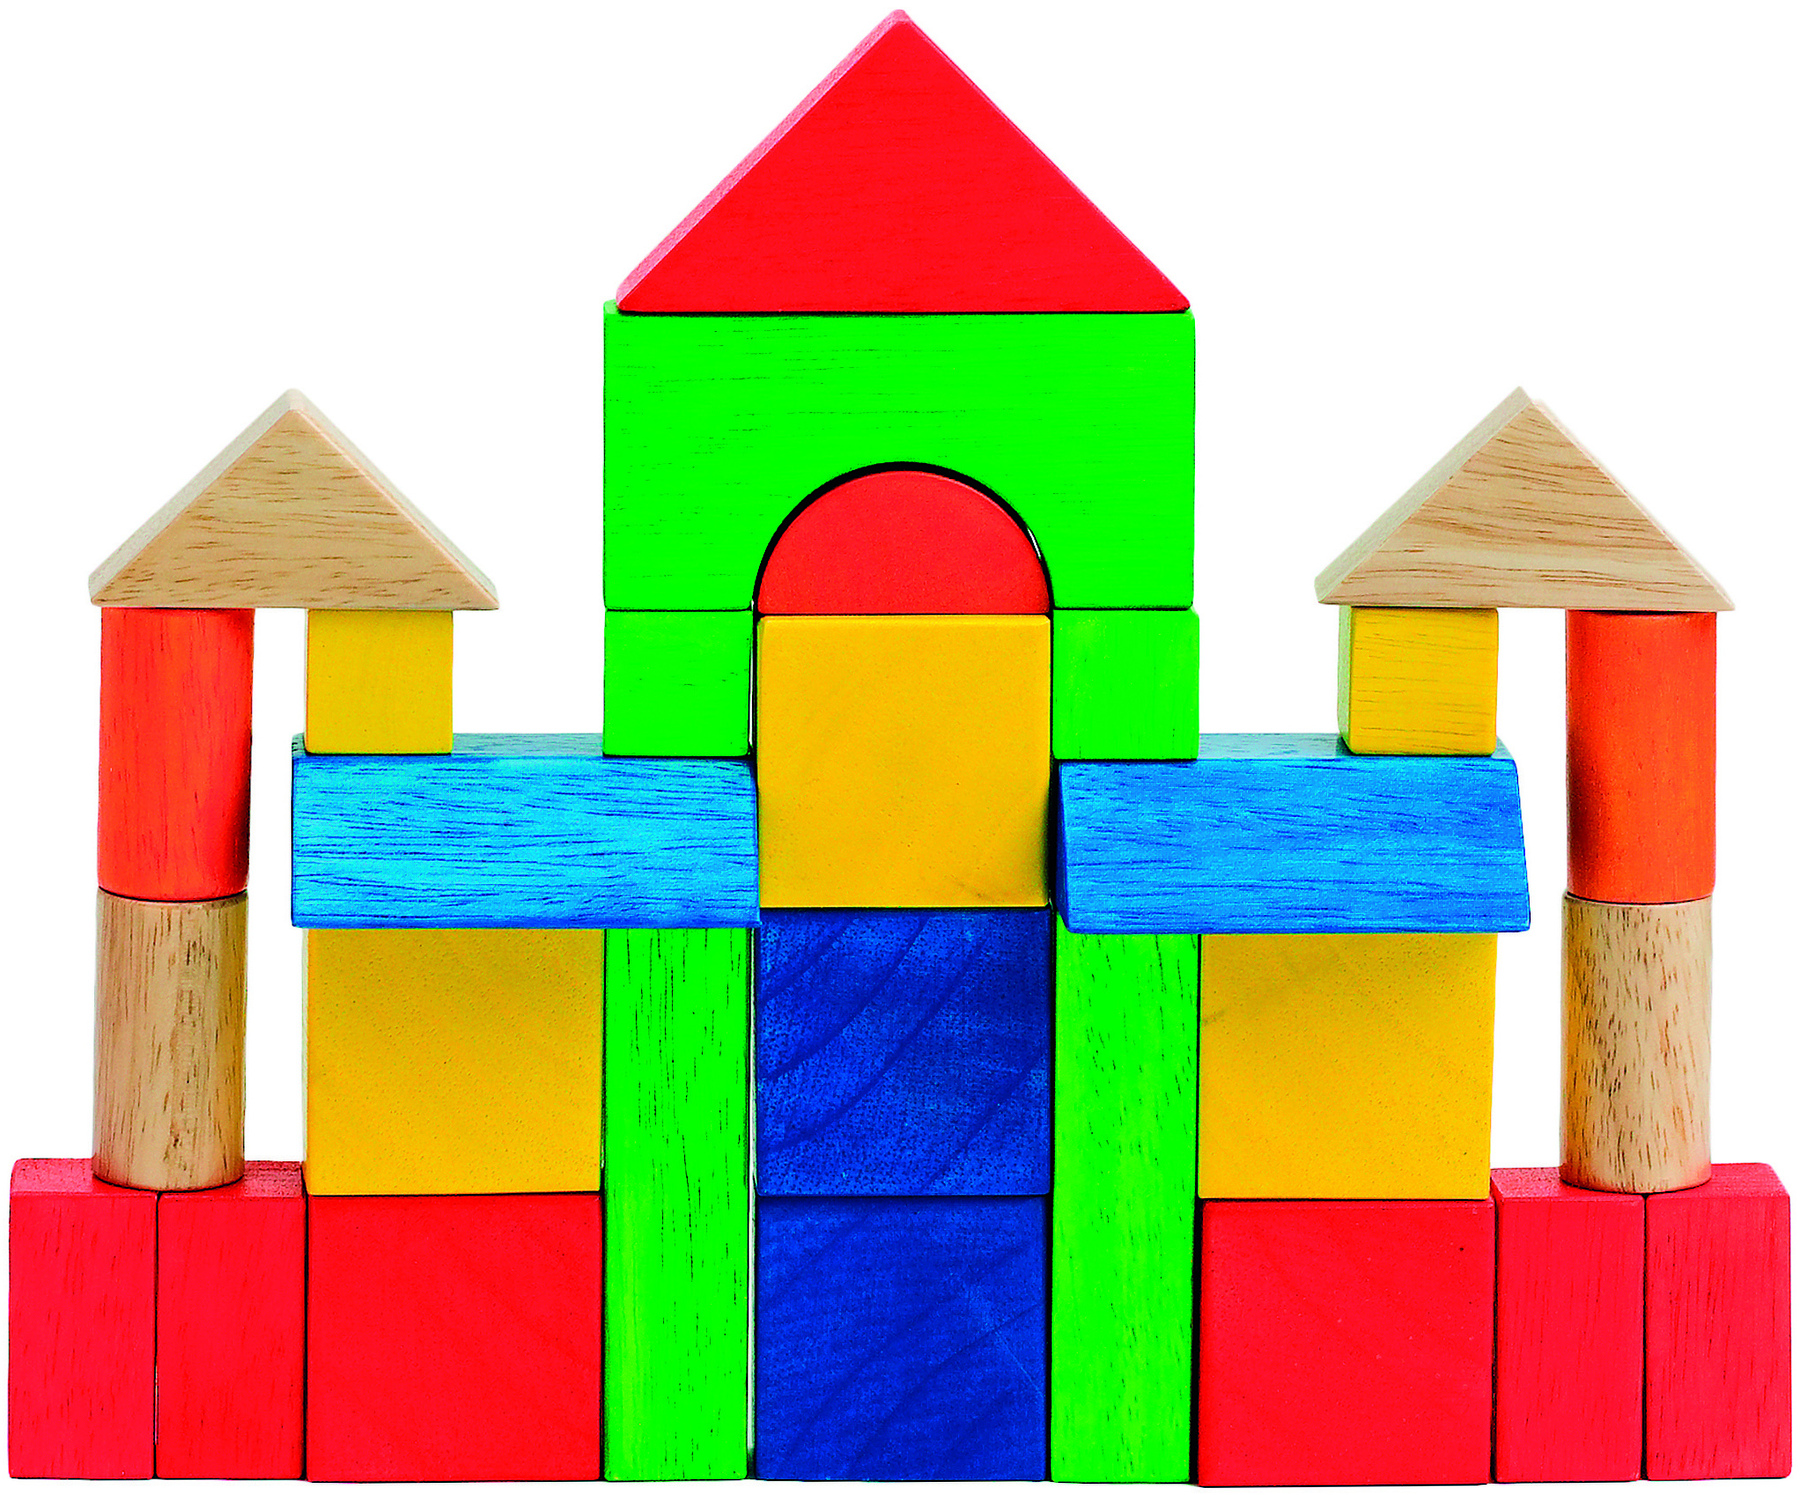 Fotografia.
Blocos de madeira coloridos, em diversas formas geométricas, formando uma construção.